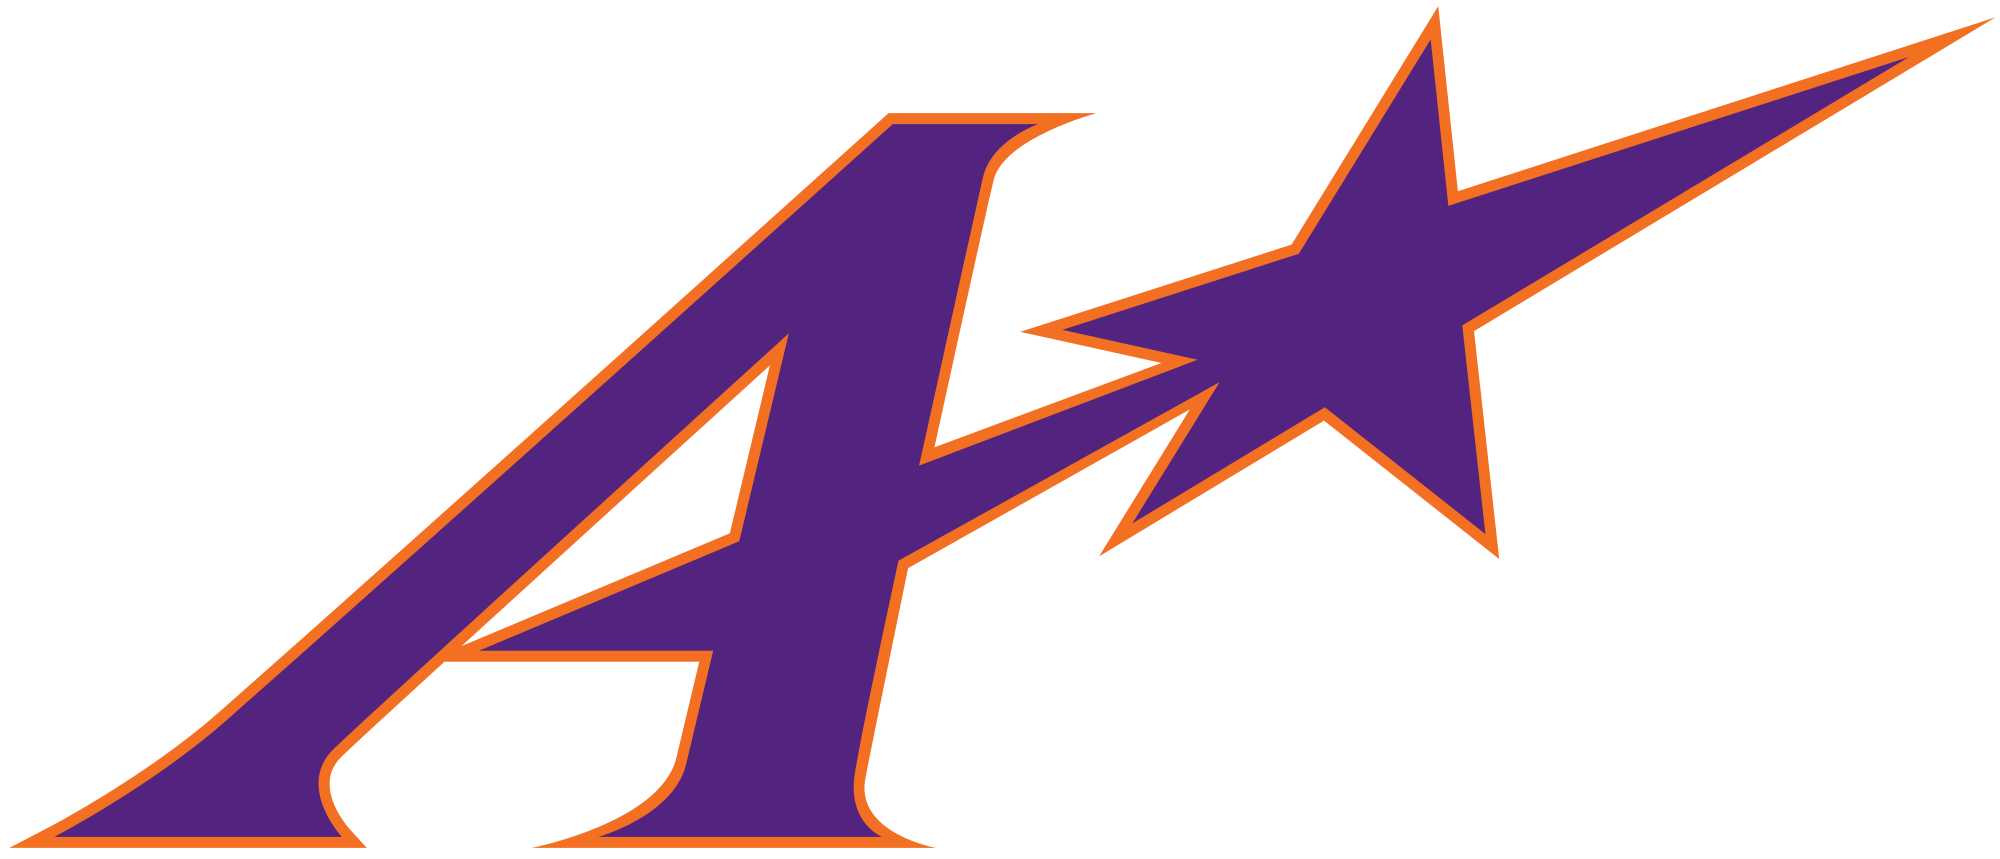 Evansville Logo - Evansville Purple Aces logo.svg